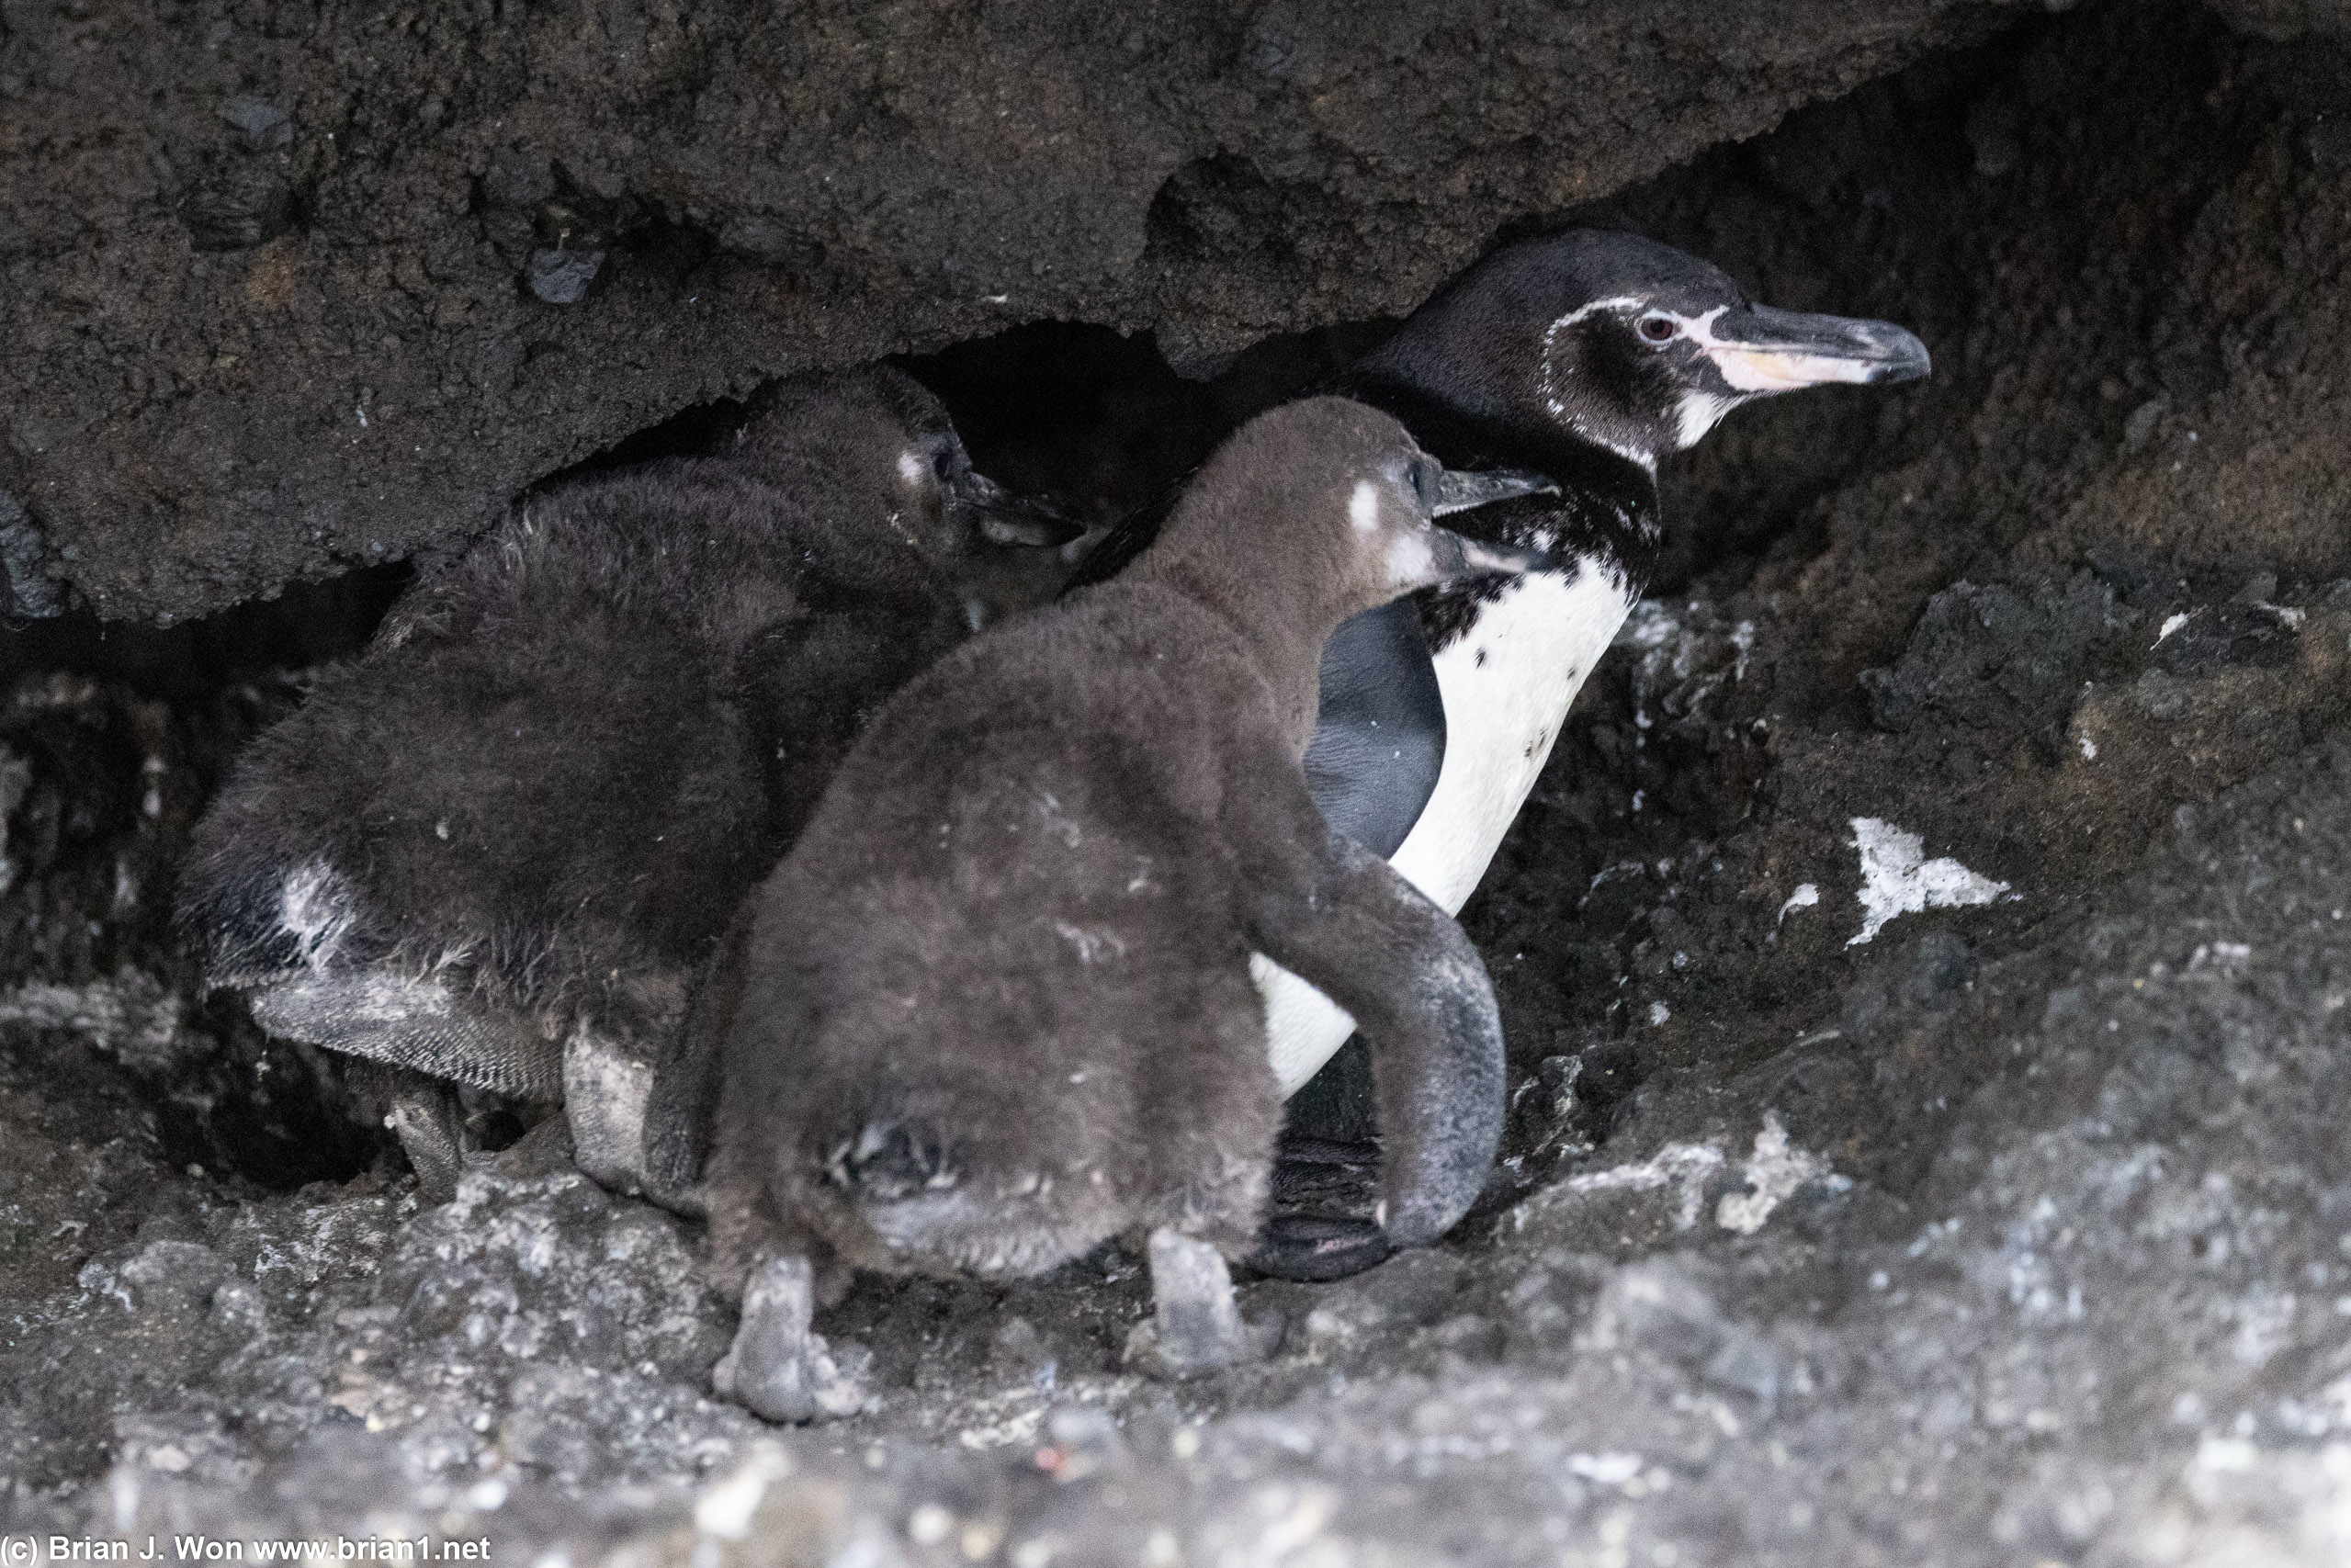 Penguin family.